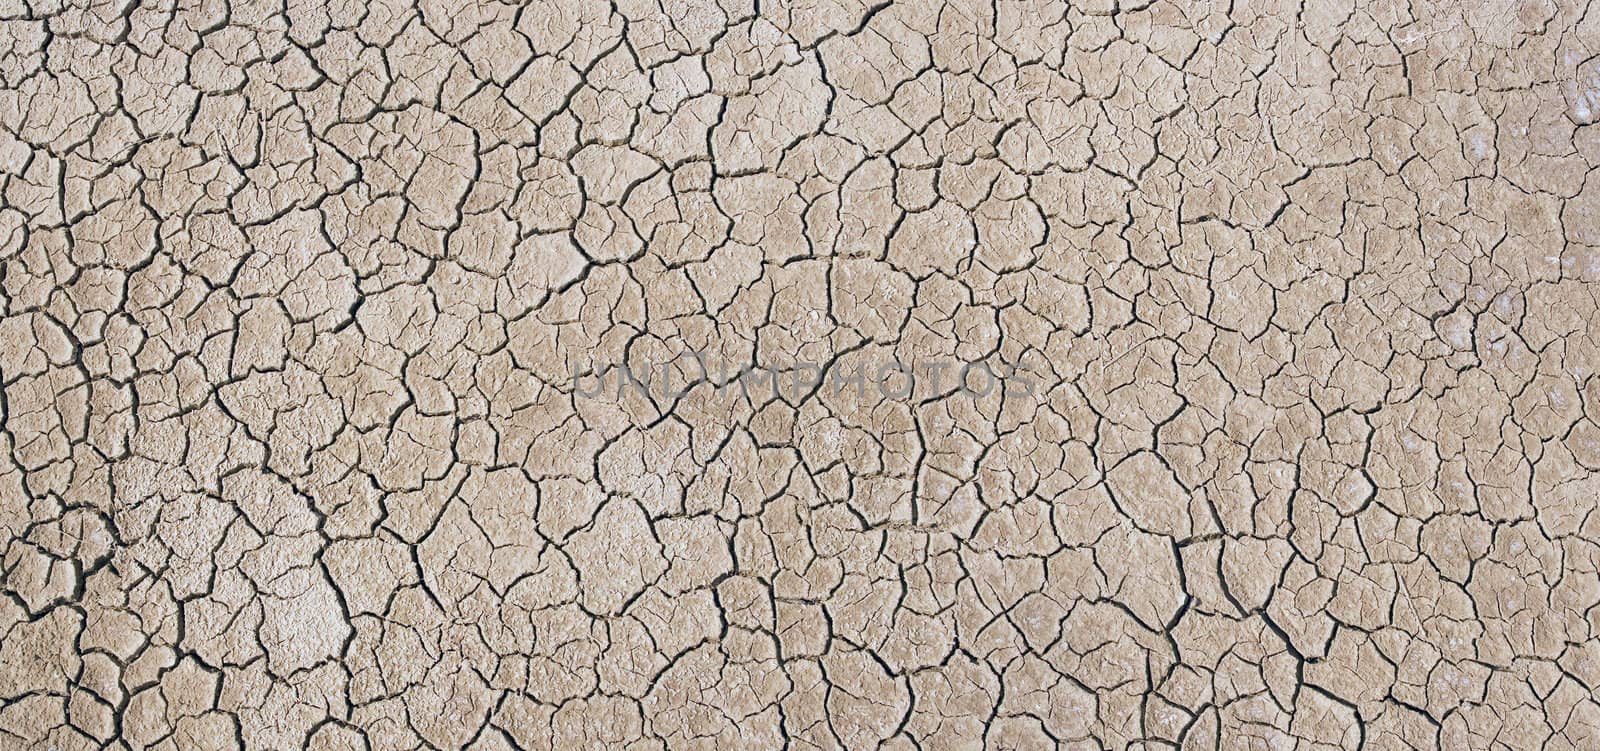 dry ground by chrisroll